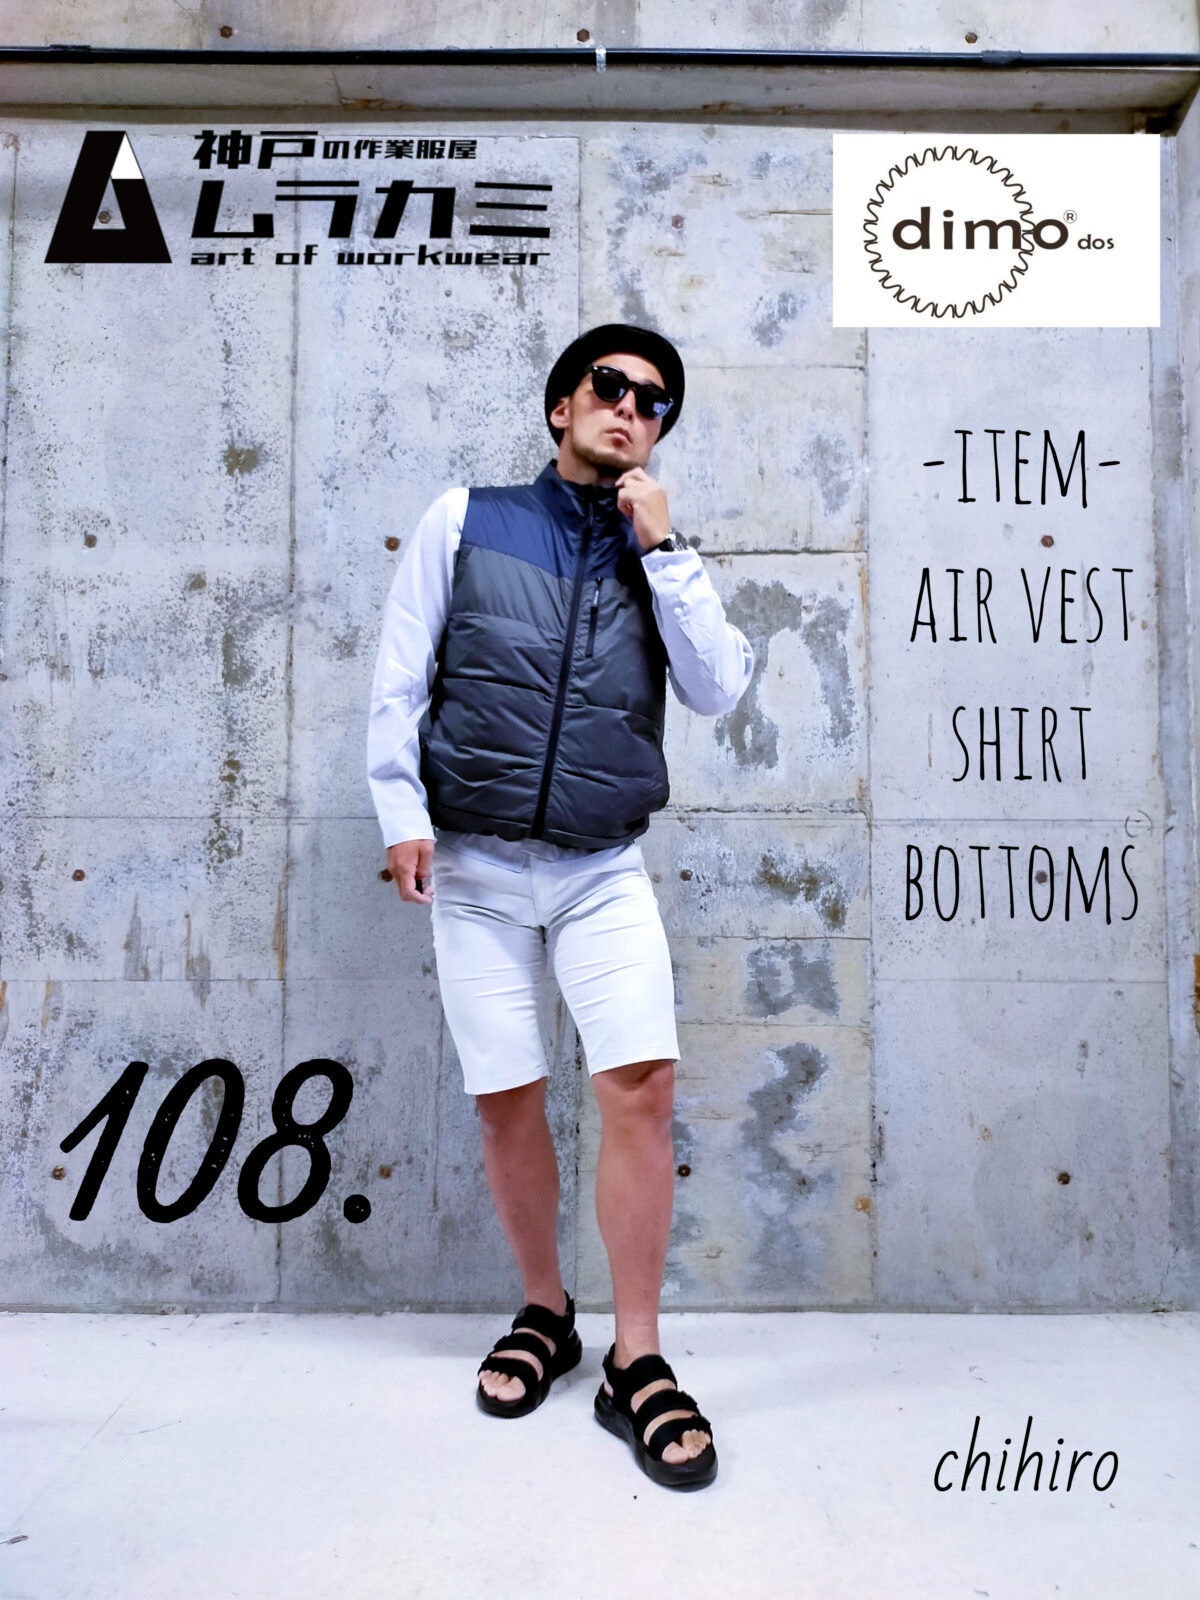 dimo（ディモ）さん特集　vol.28 ■art of workwear スタイリングナンバー108.